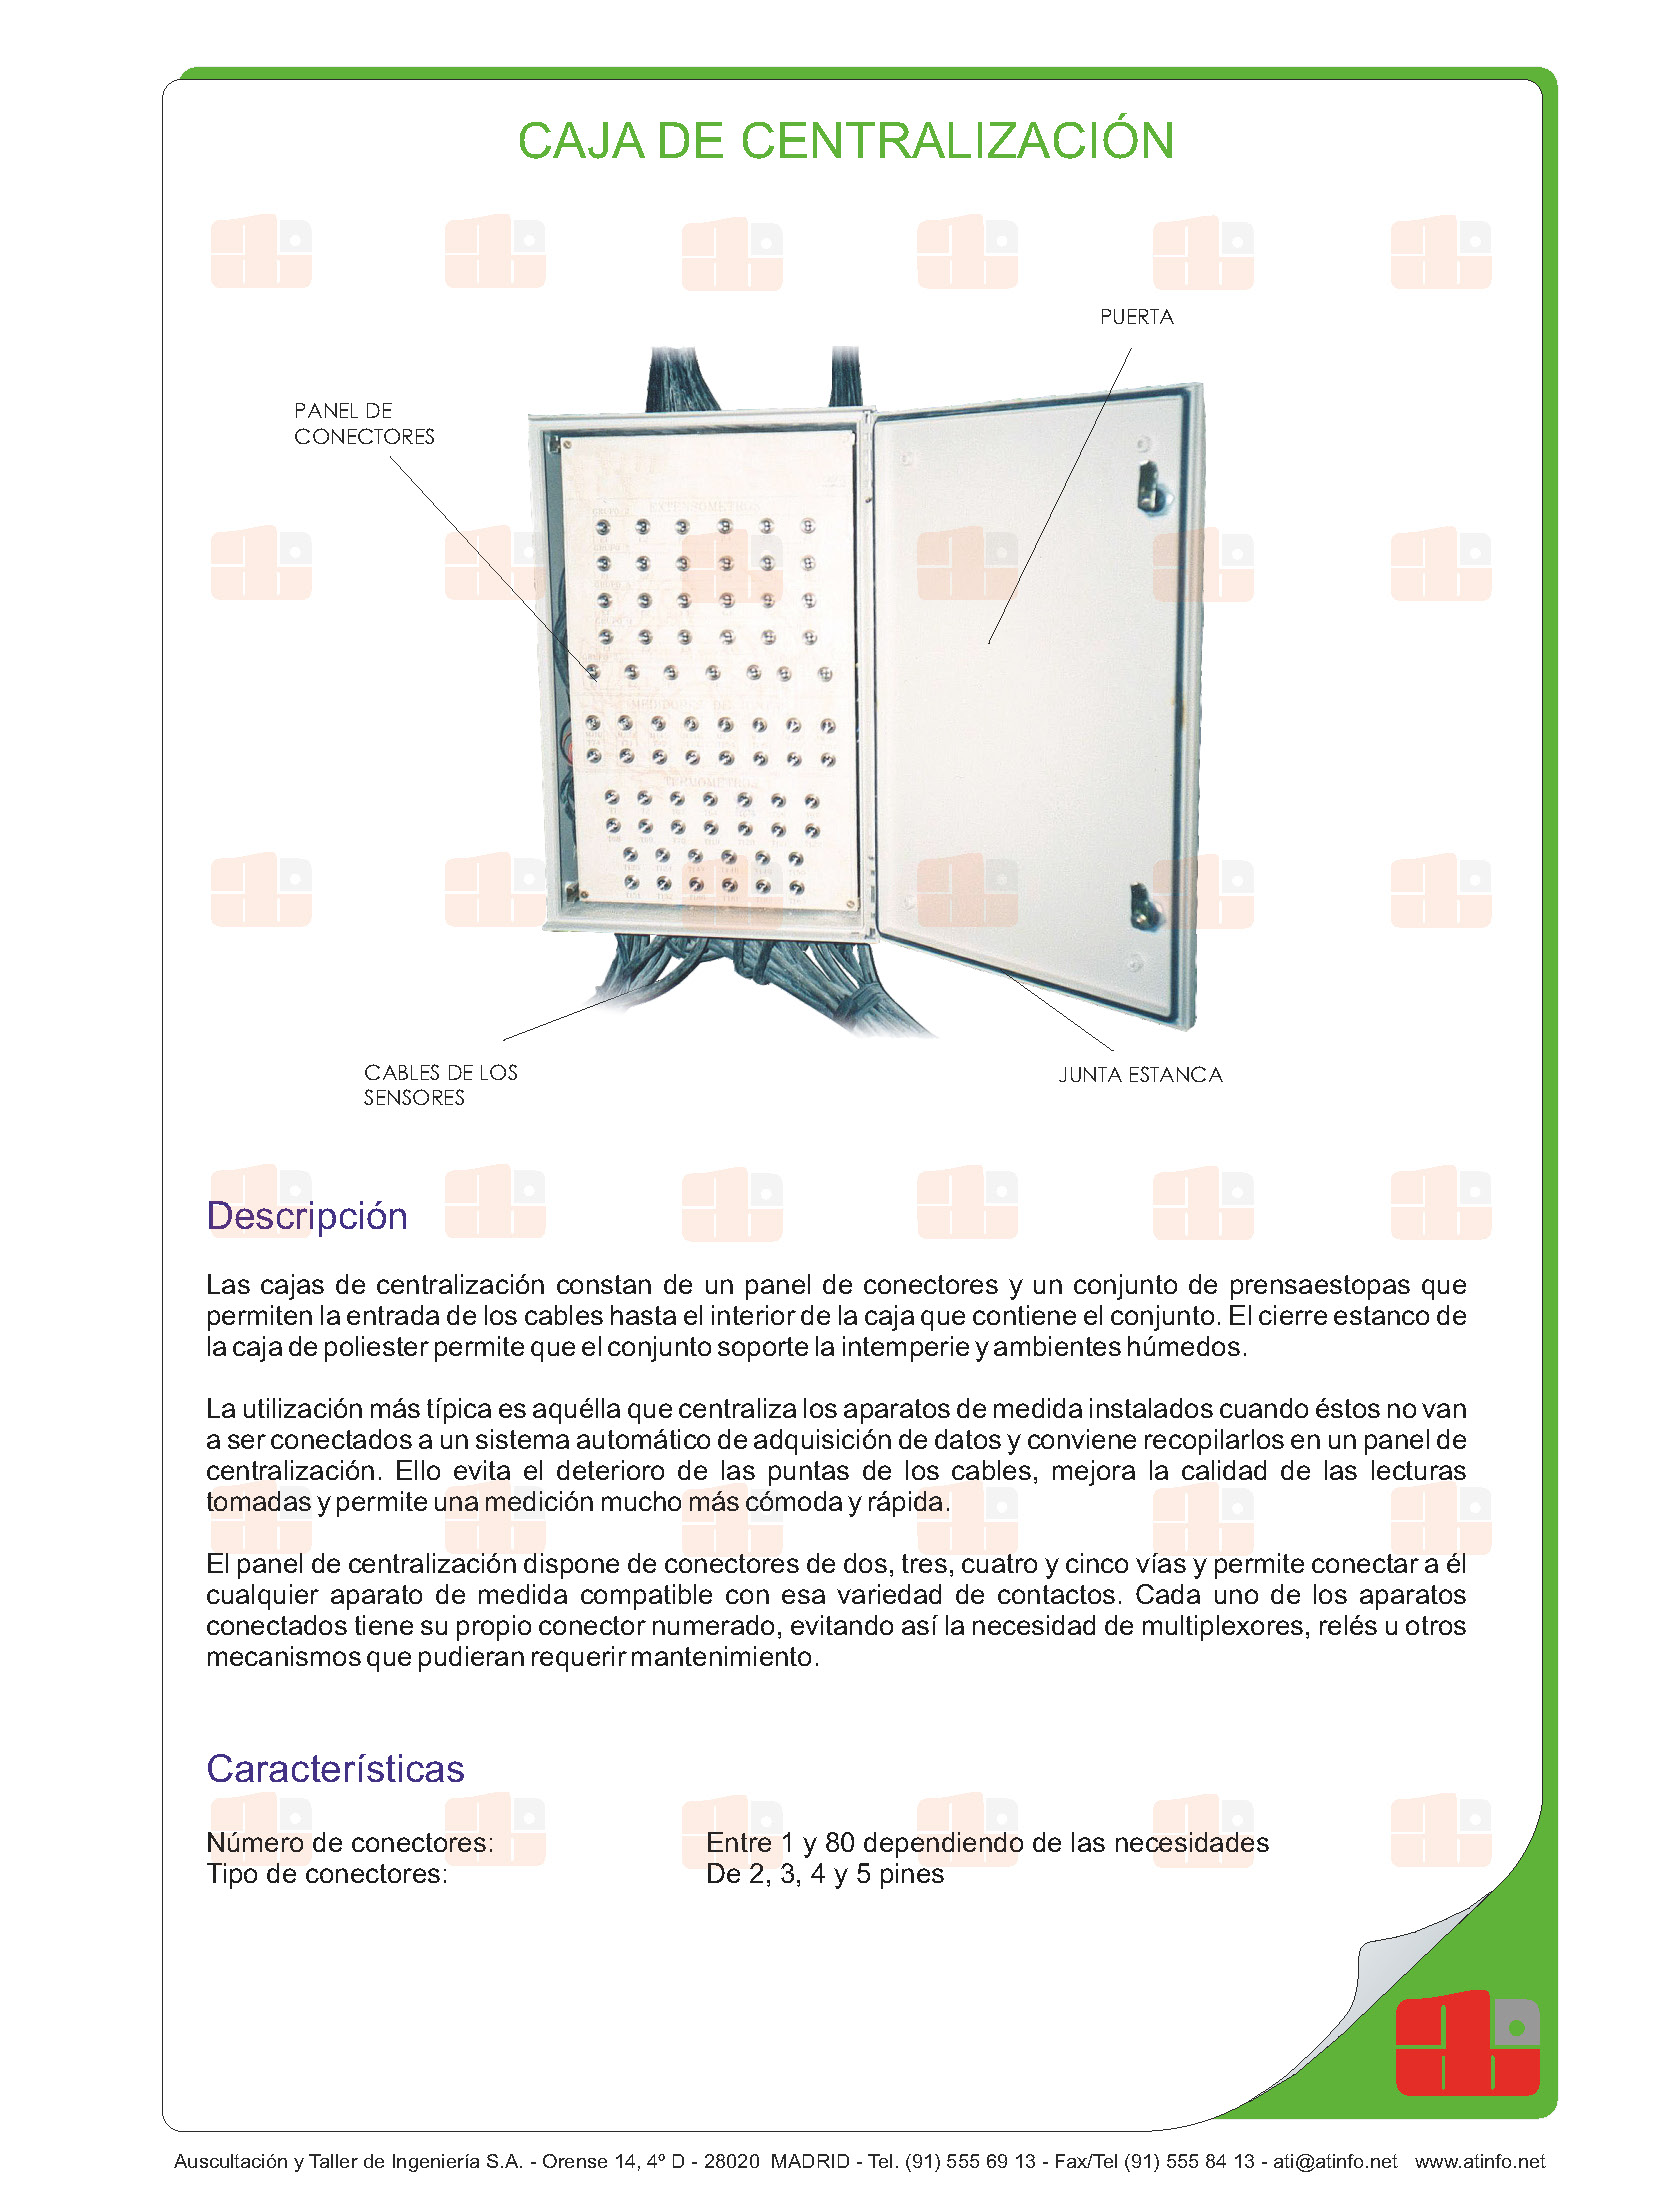 auscultacion-ingenieria-atinfo-automatización-caja-centralizacion-lecturas